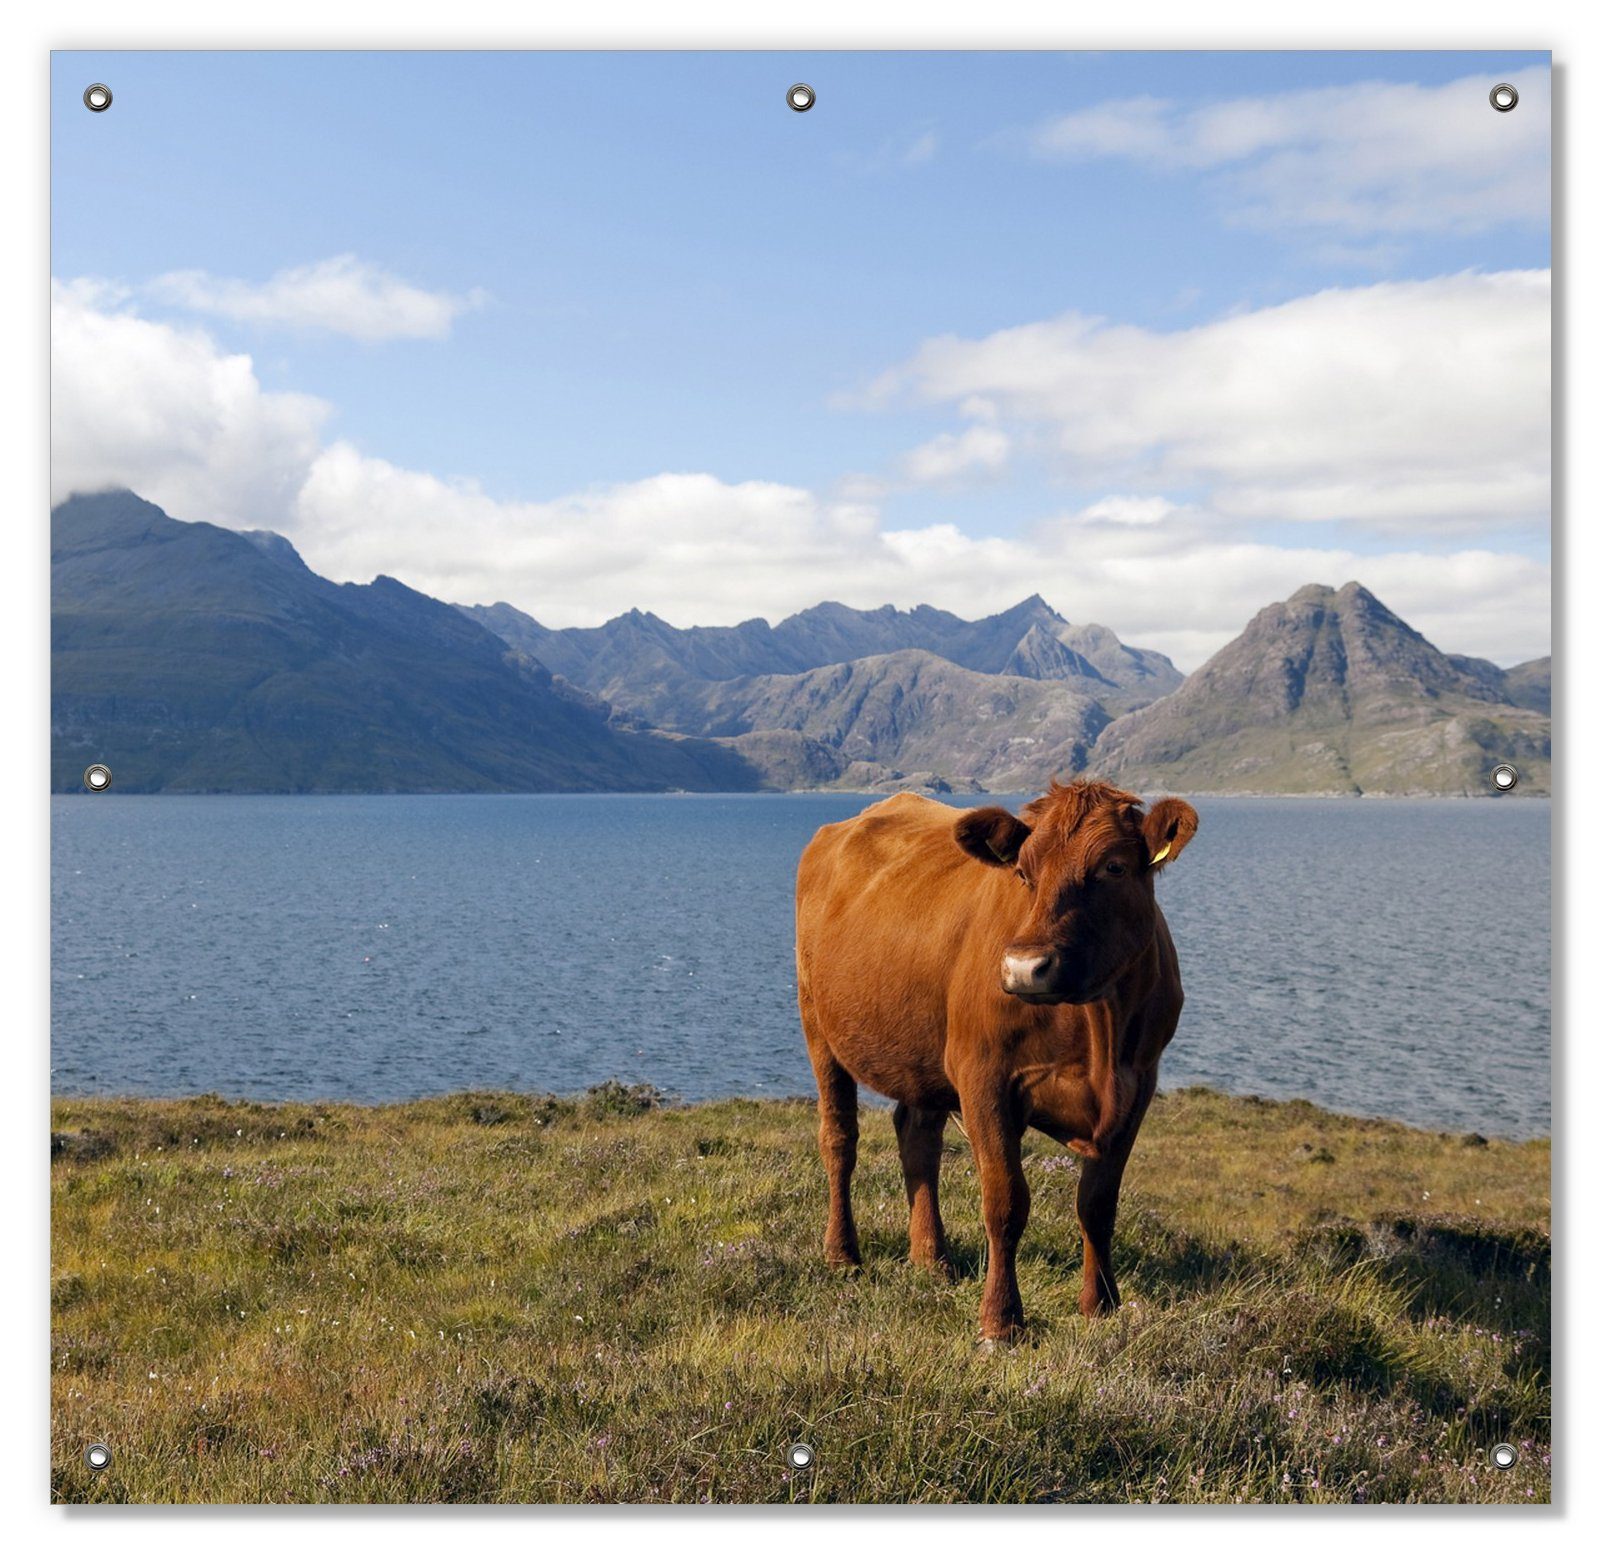 Förderungsantragsteller Sonnenschutz Kuh in und mit Bergen, wiederablösbar blickdicht, den wiederverwendbar Wallario, Saugnäpfen